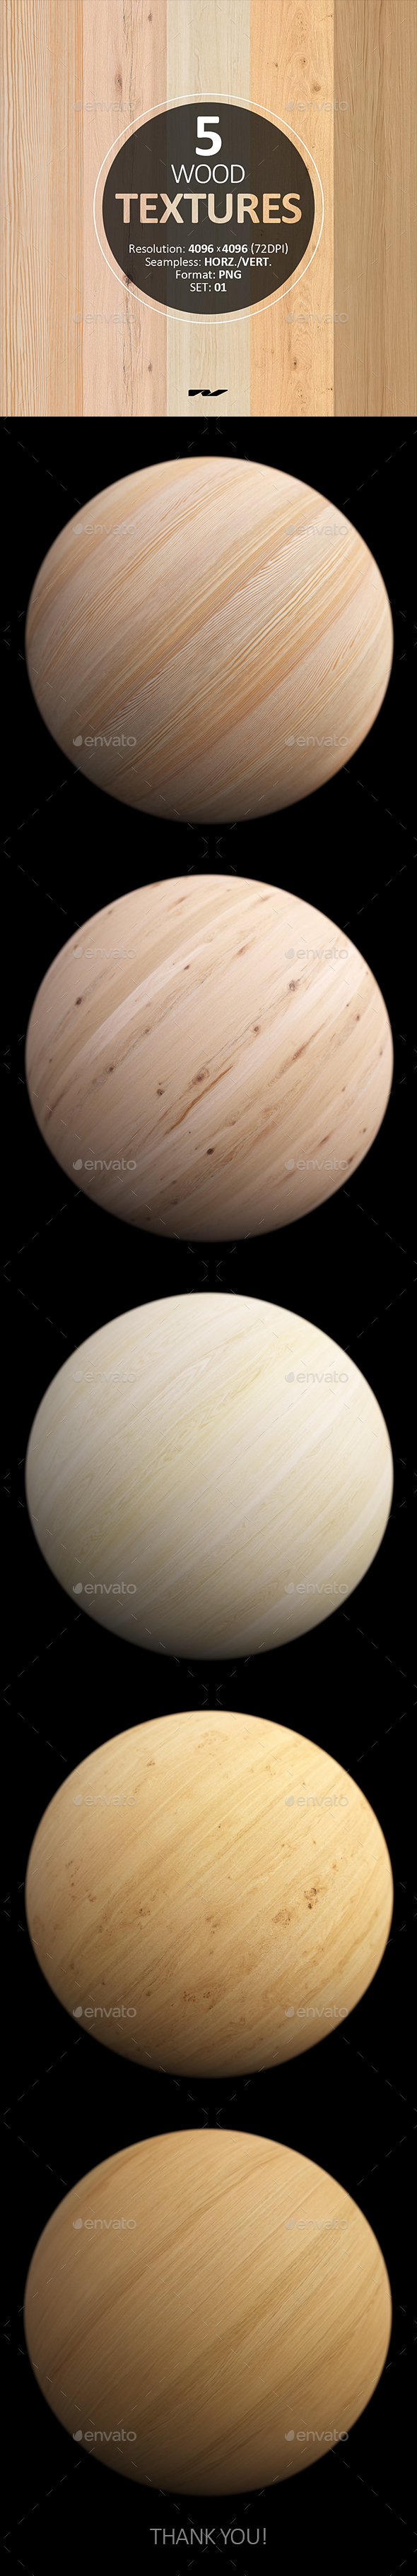 5 Wood Textures - 3Docean 25365020